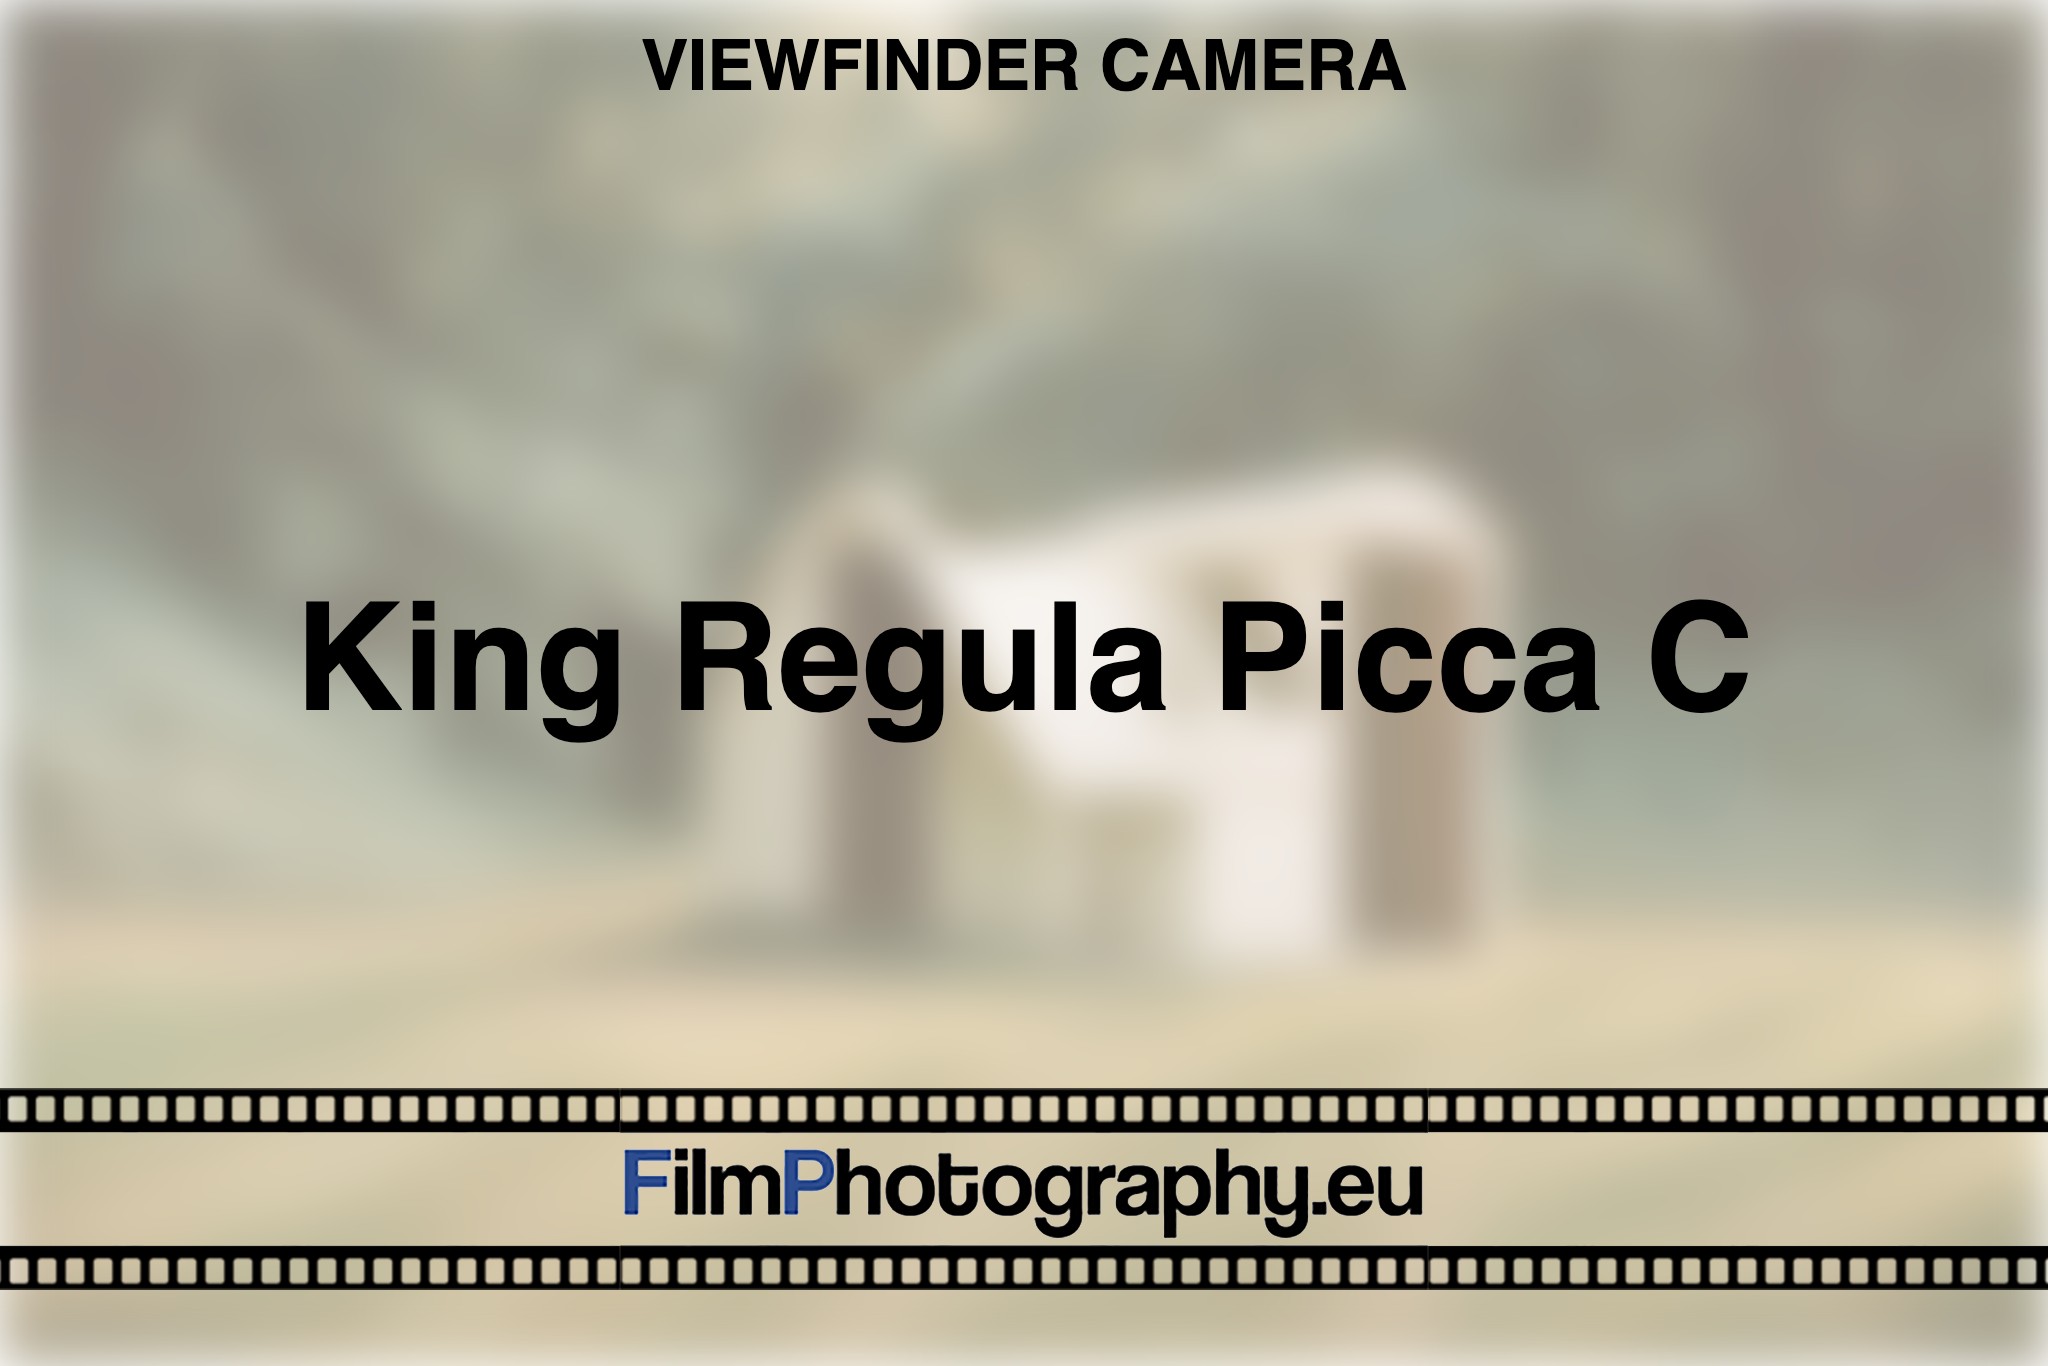 king-regula-picca-c-viewfinder-camera-bnv